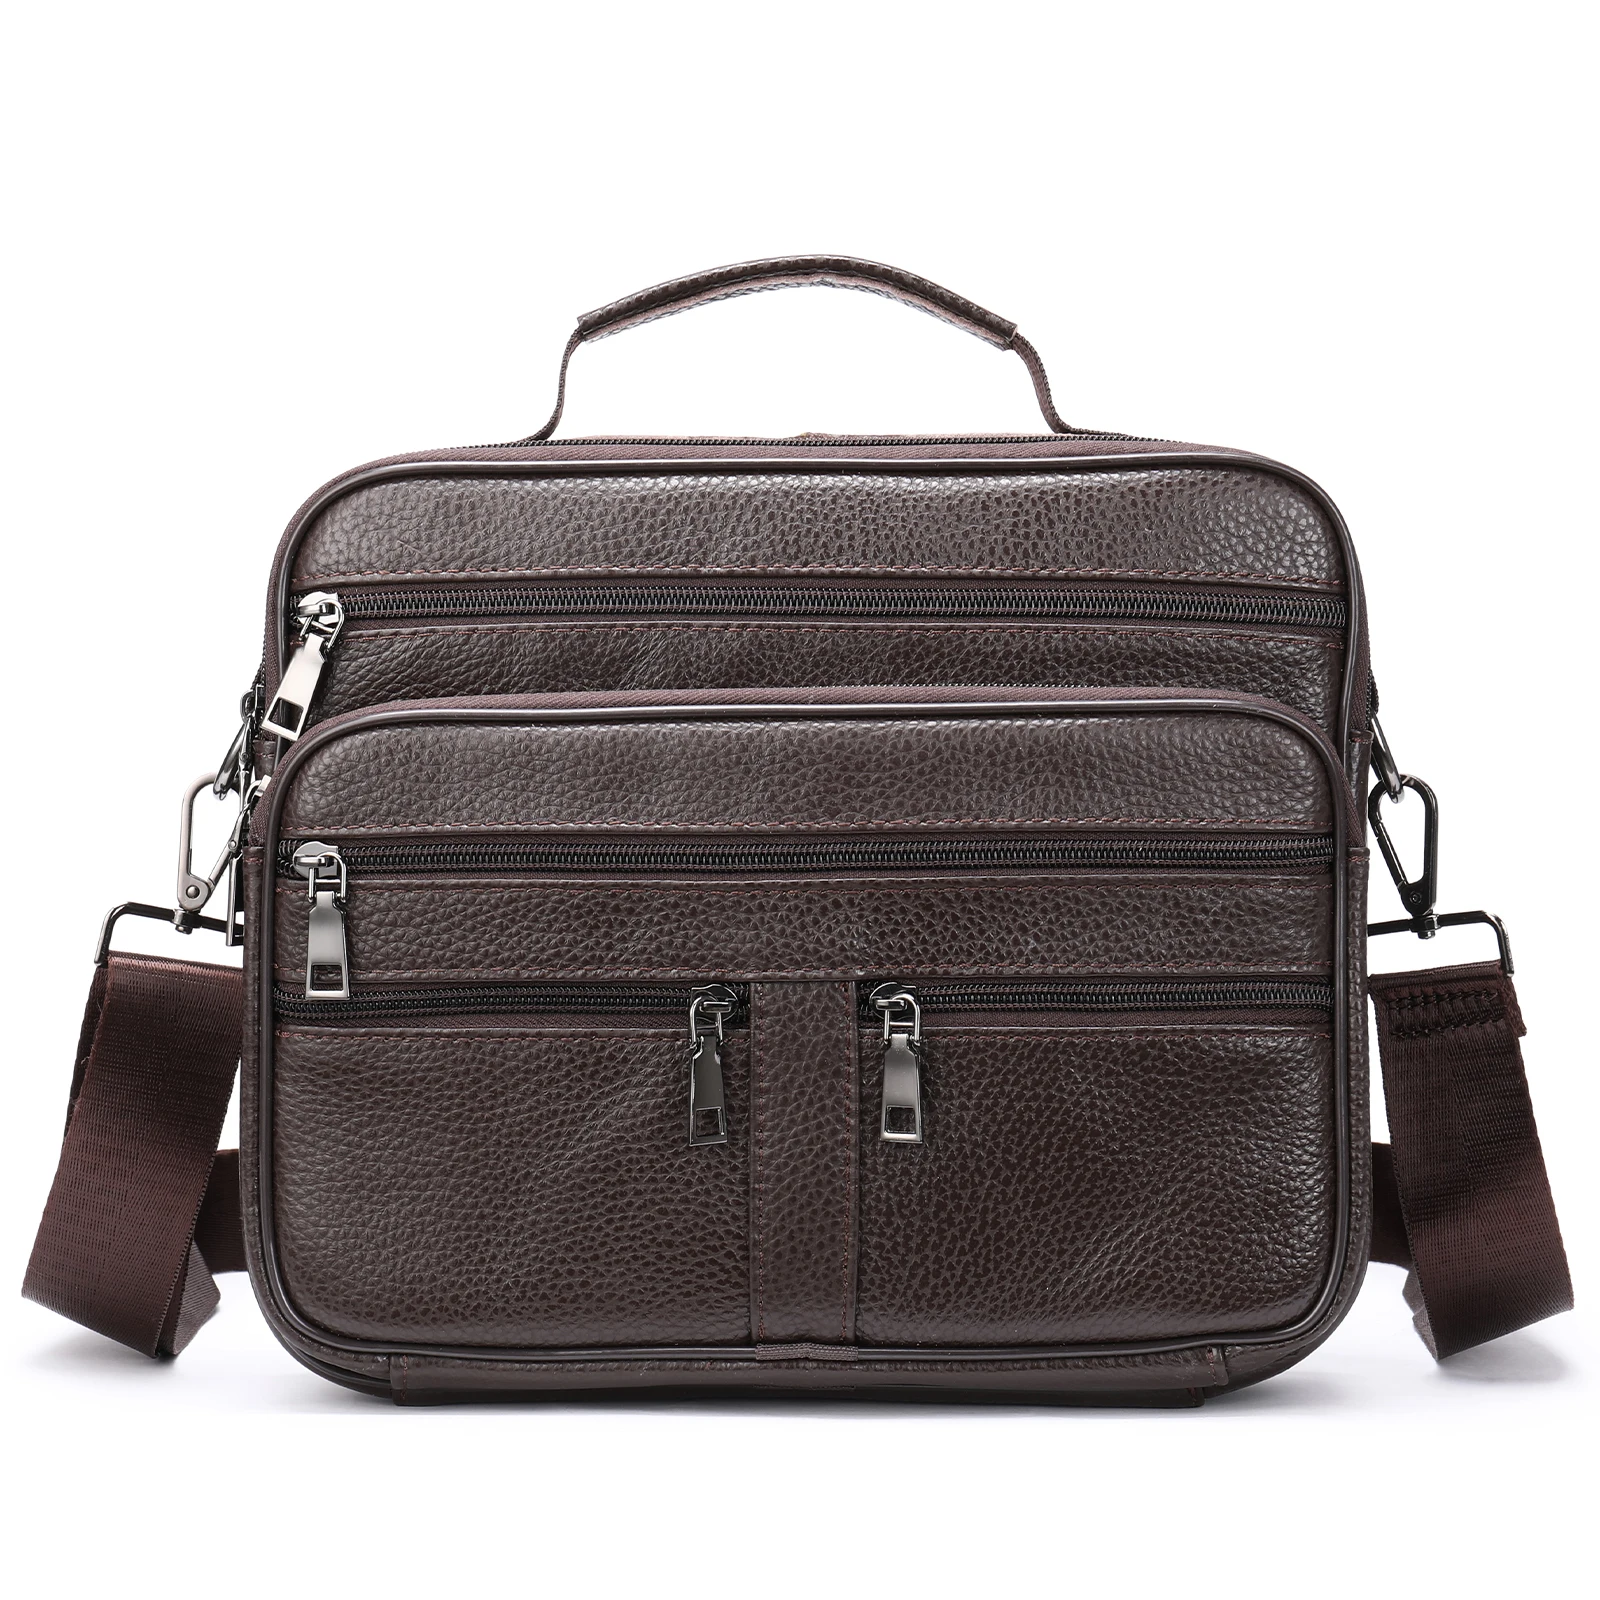 Houlder bag for men black cowhide leather handbag for men business office messenger bag thumb200